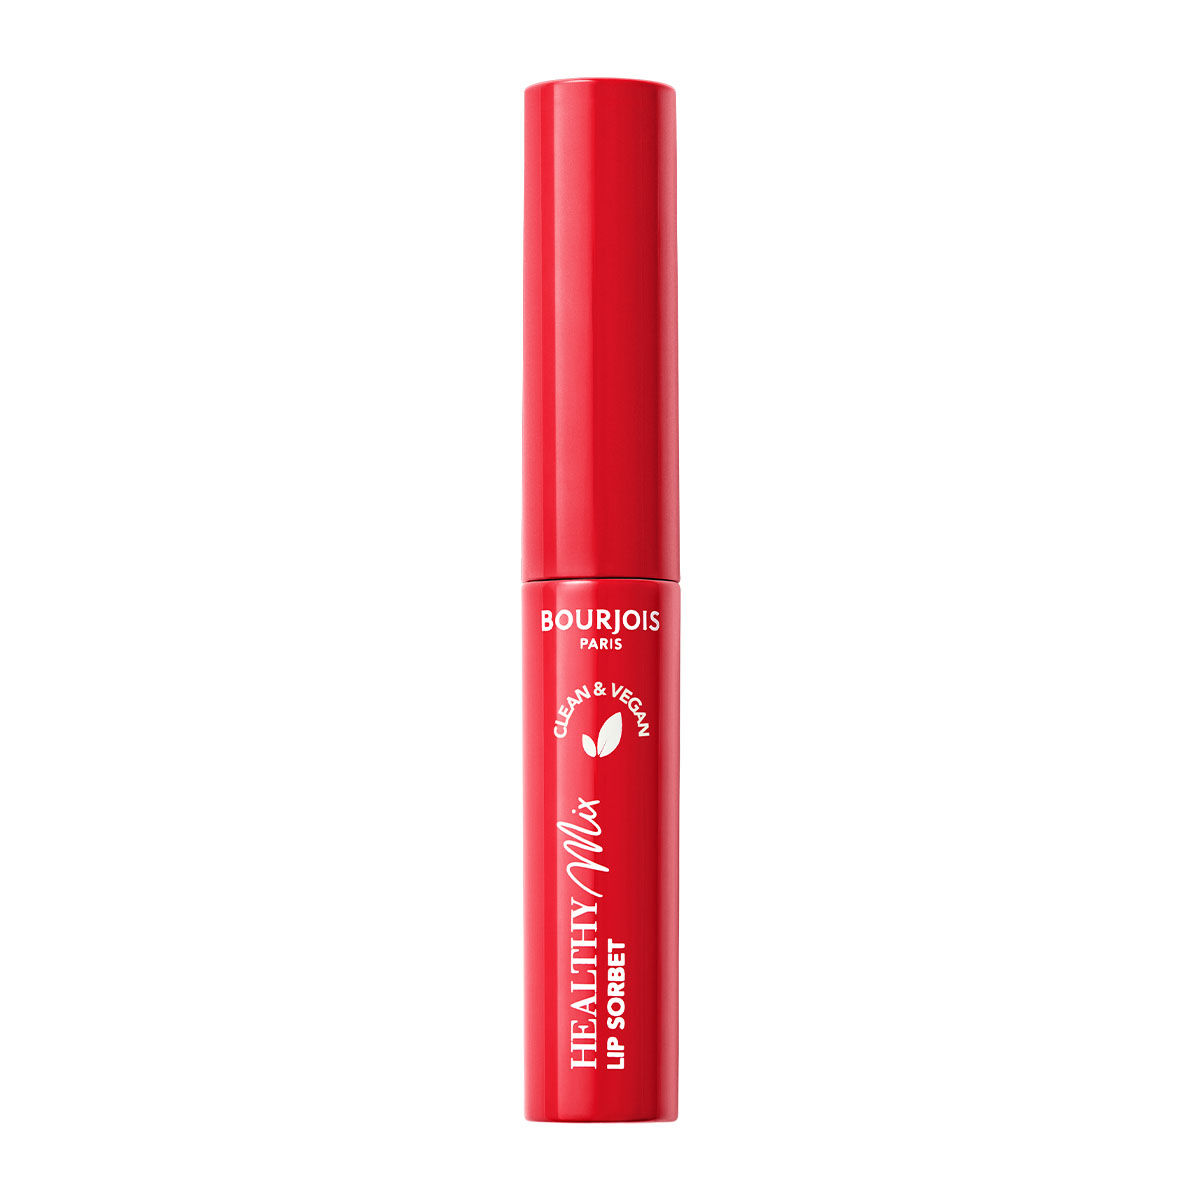 Веганская увлажняющая помада 02 красно-свежая Bourjois Healthy Mix Clean Lip Sorbet, 7,4 гр цена и фото